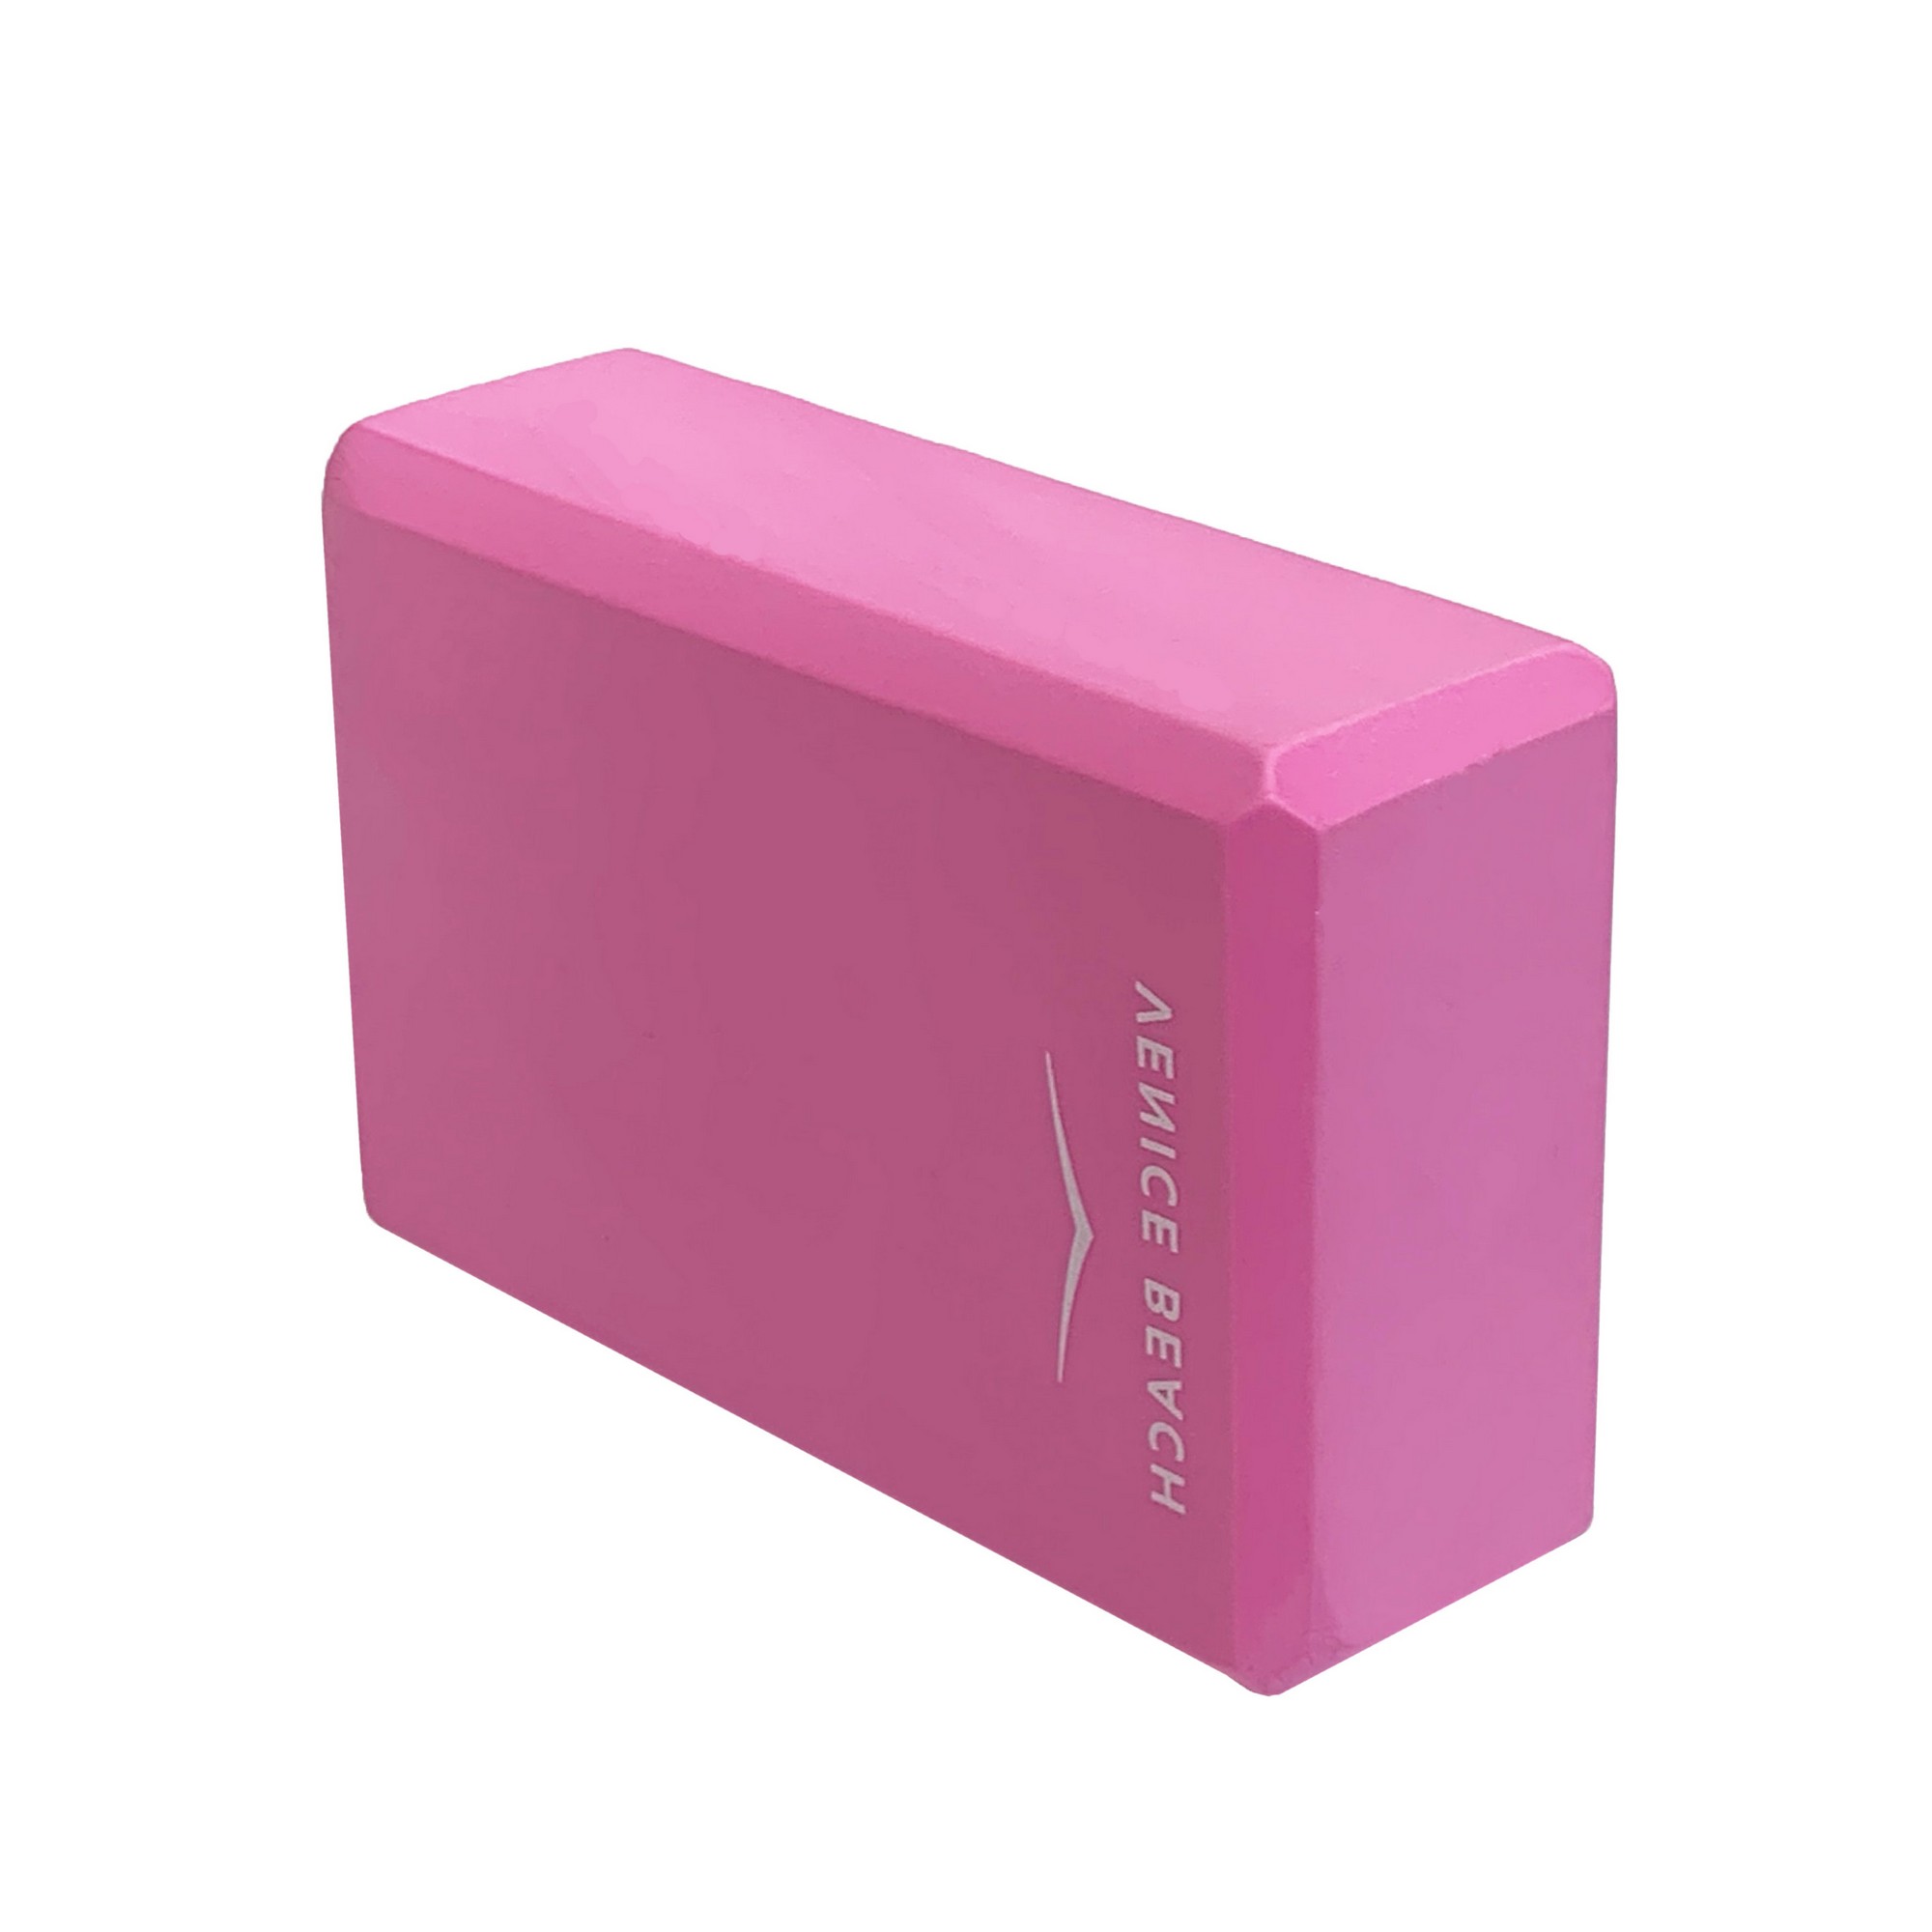 Йога блок Sportex полумягкий, из вспененного ЭВА 22,3х15х7,6 см E39131-38 розовый